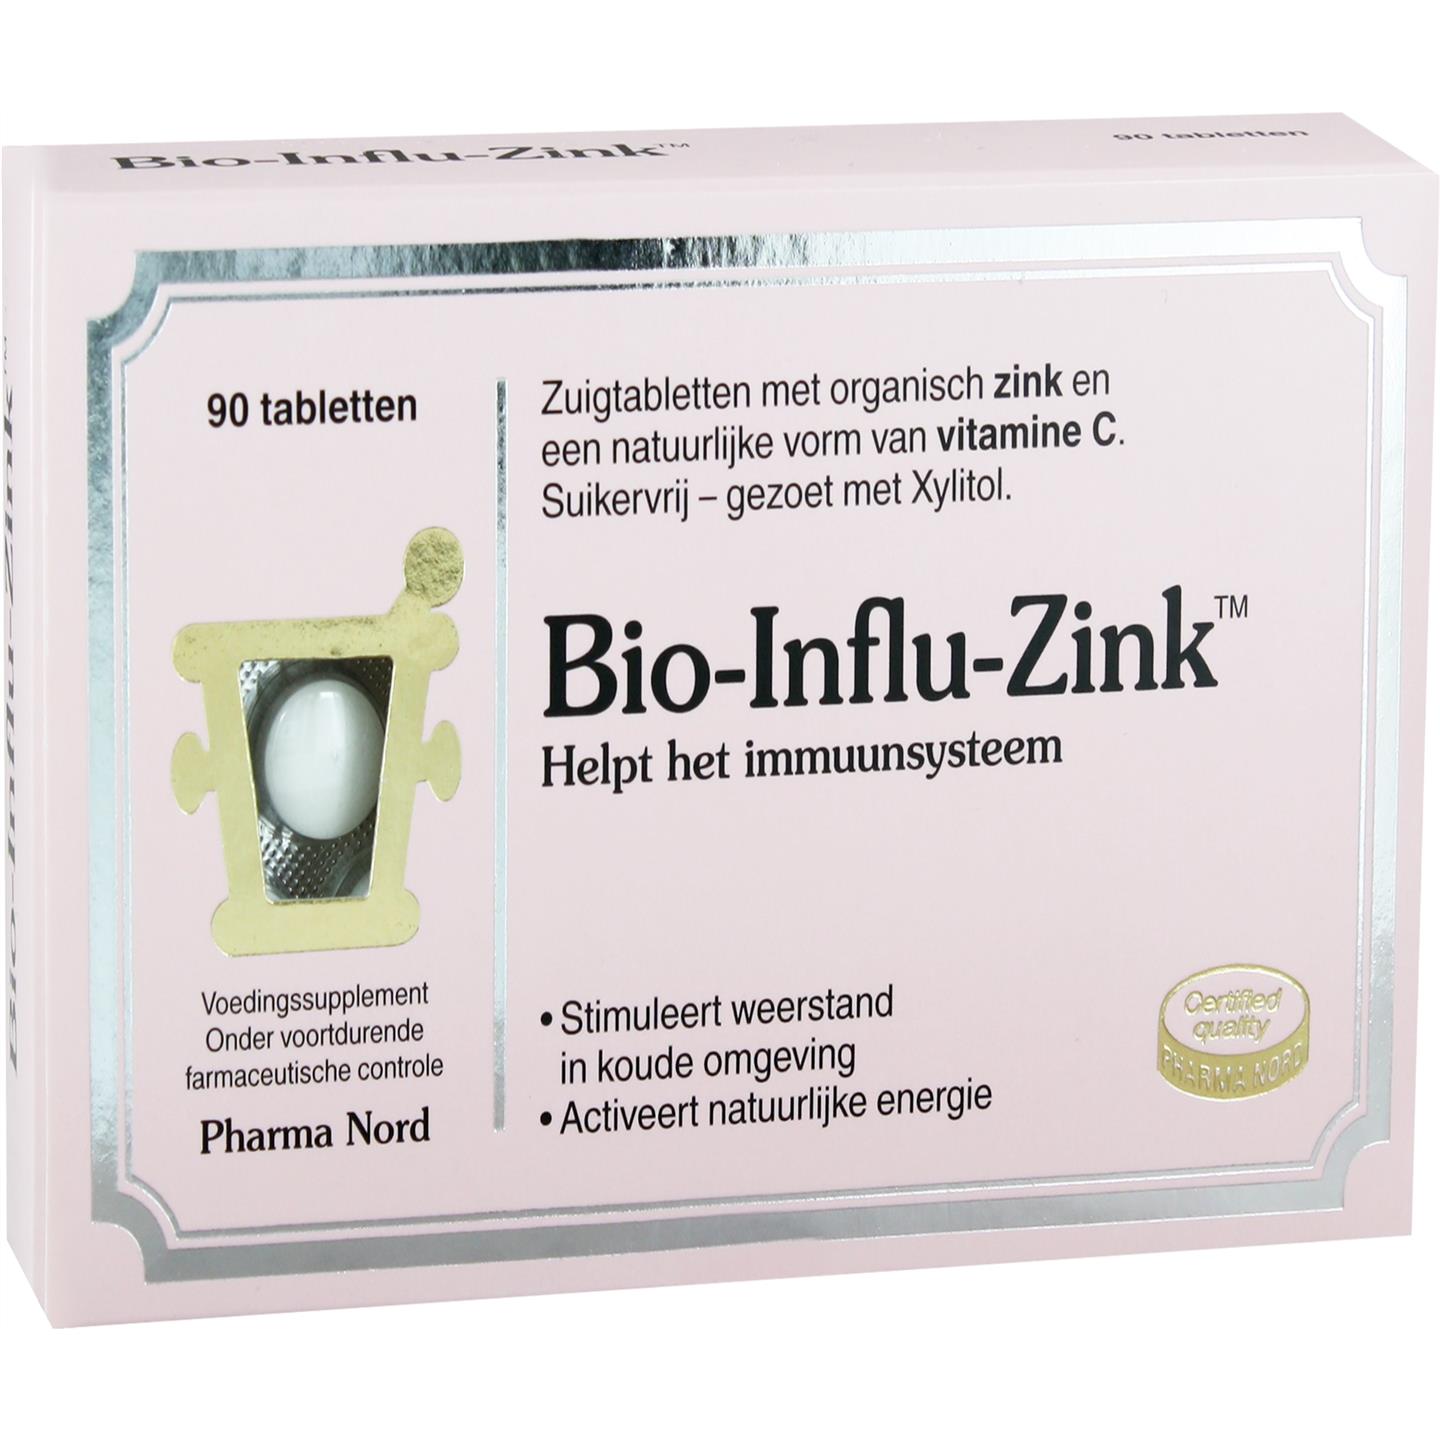 Bio-Influ-Zink